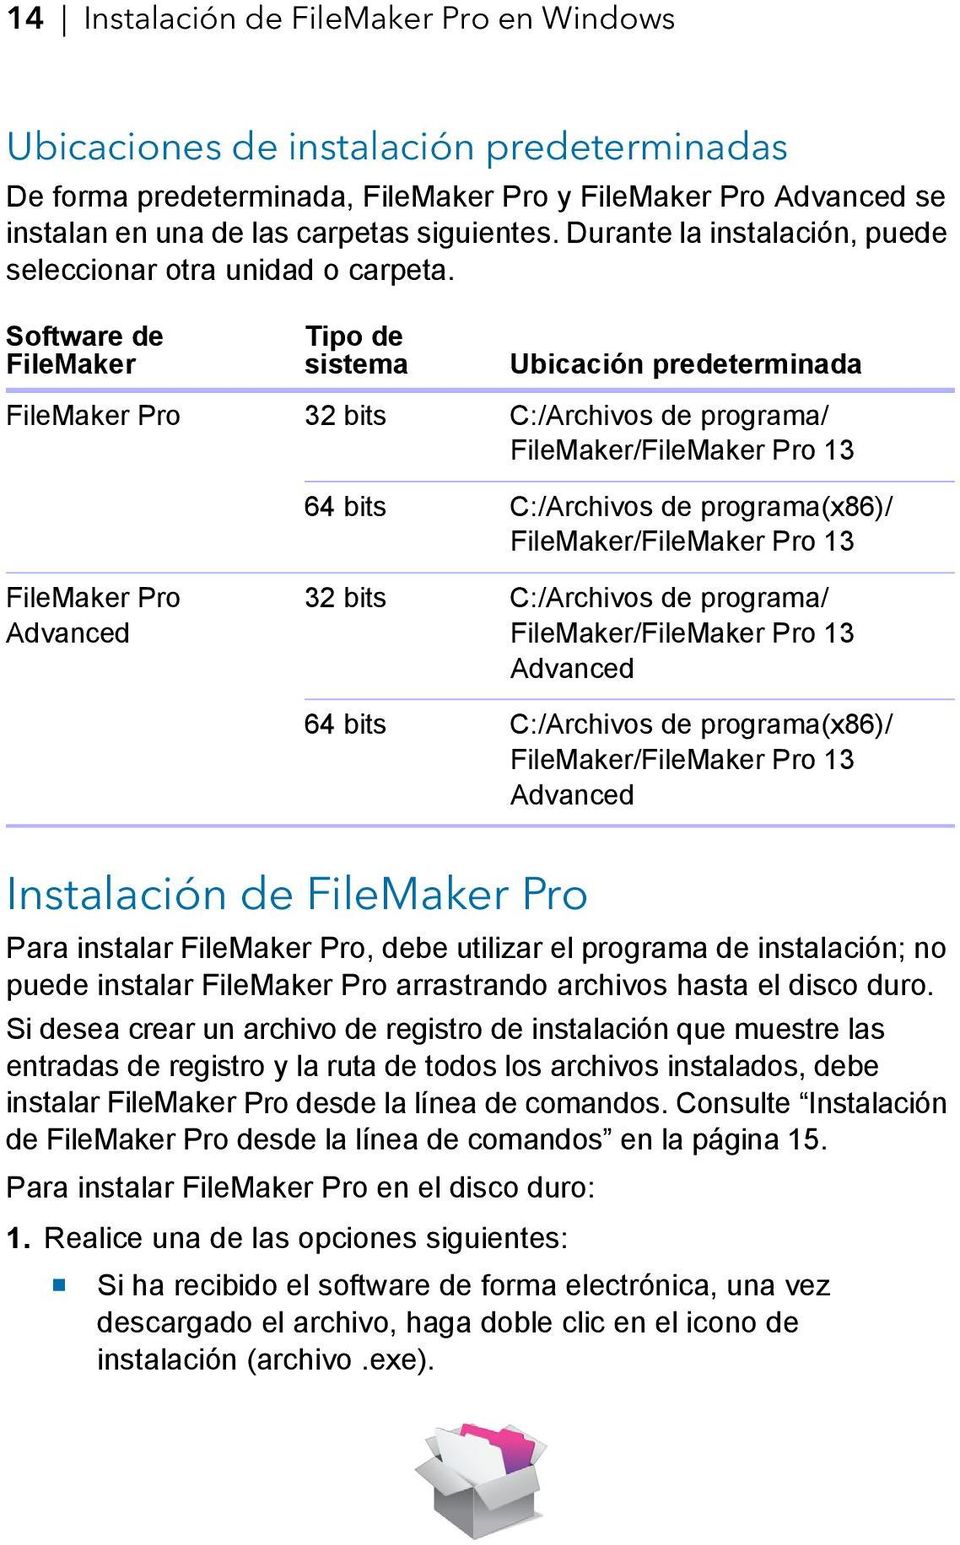 Software de FileMaker Tipo de sistema Ubicación predeterminada FileMaker Pro 32 bits C:/Archivos de programa/ FileMaker/FileMaker Pro 13 64 bits C:/Archivos de programa(x86)/ FileMaker/FileMaker Pro